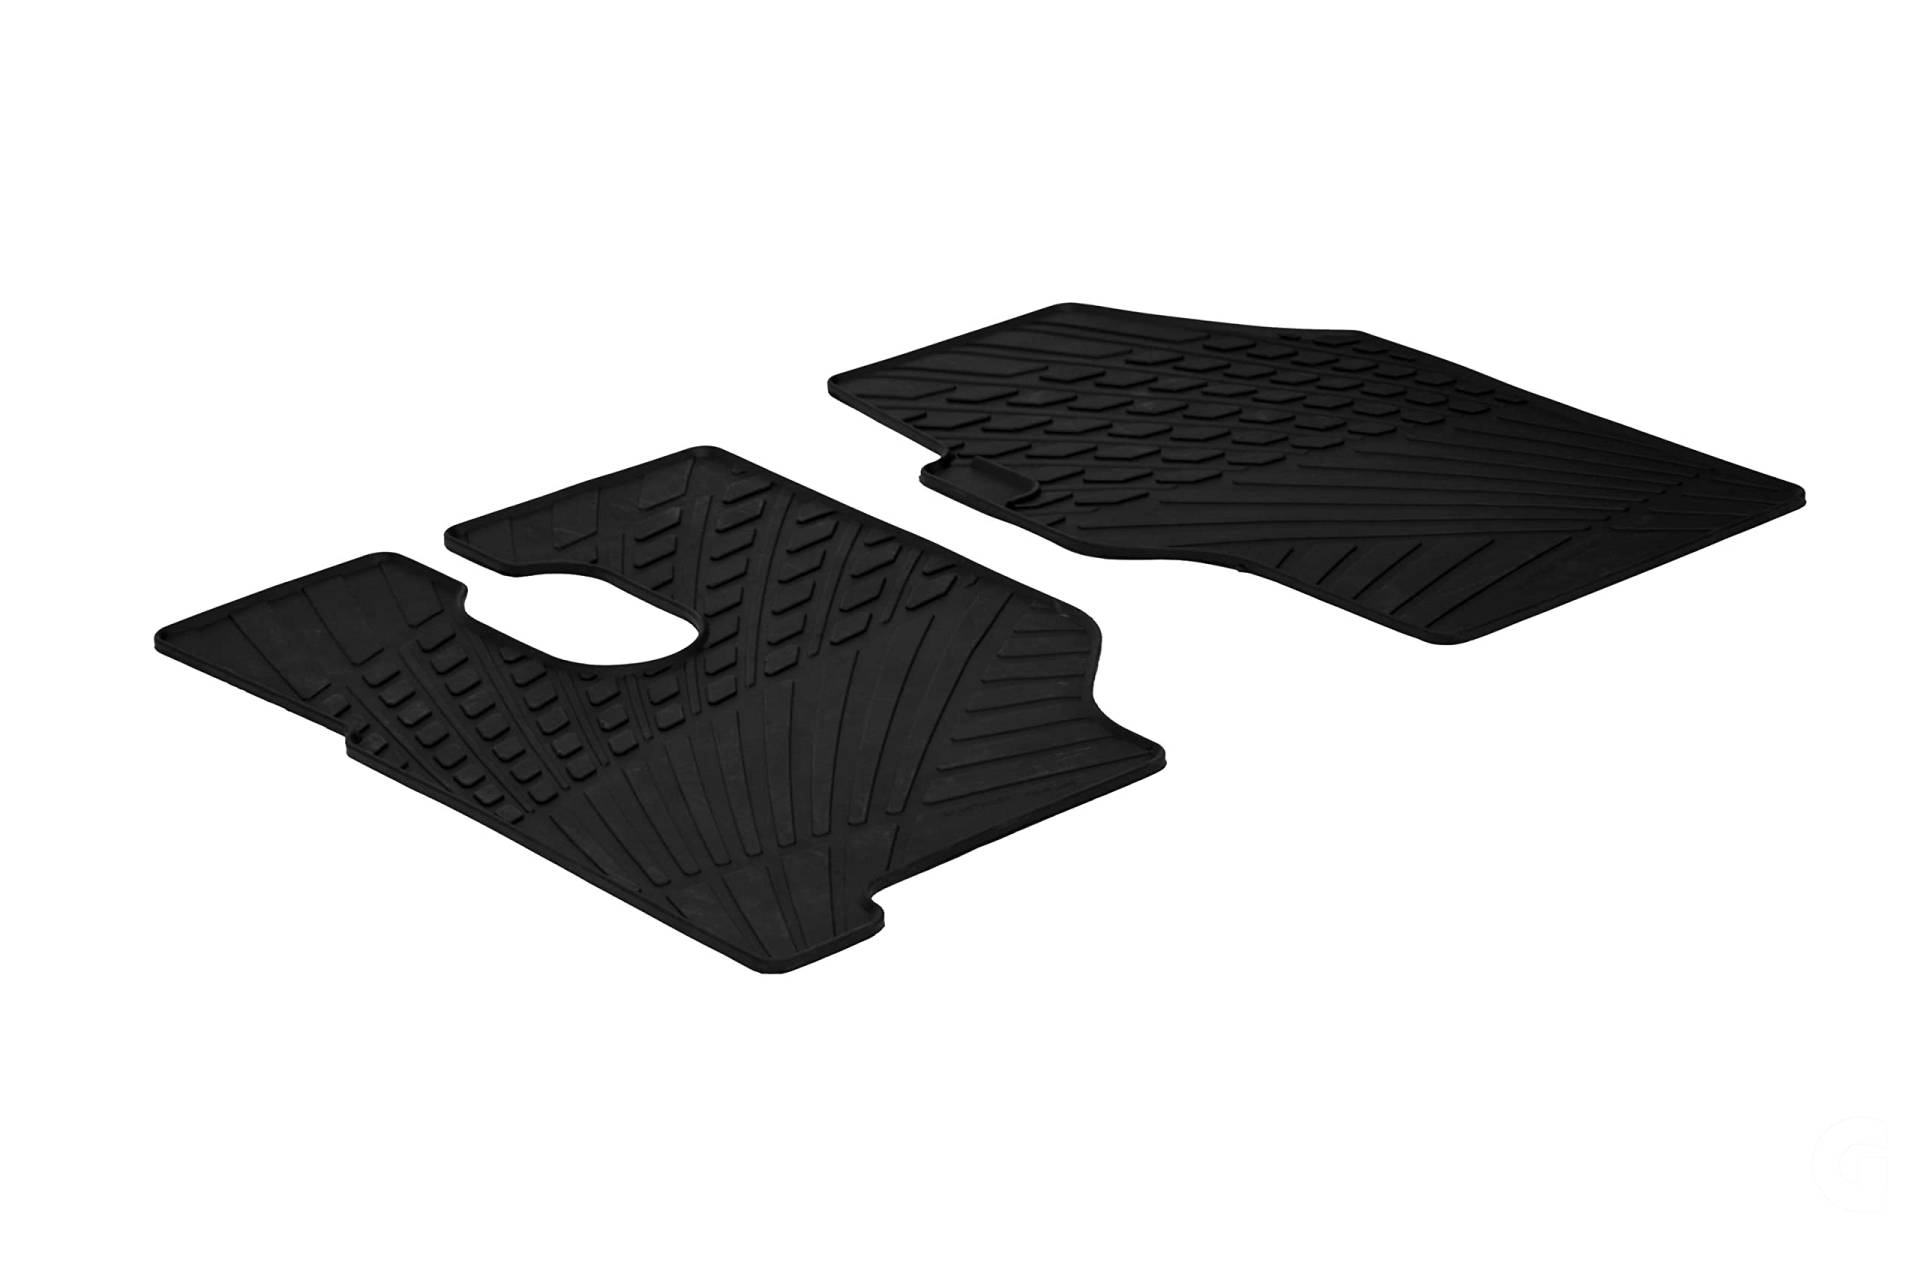 AROBA GL0910 Design Gummi Fußmatten kompatibel mit Mercedes Actros ab BJ. 01.2003> erhöhter Rand 2 TLG Farbe Schwarz Gummimatten Automatten passgenau von AROBA